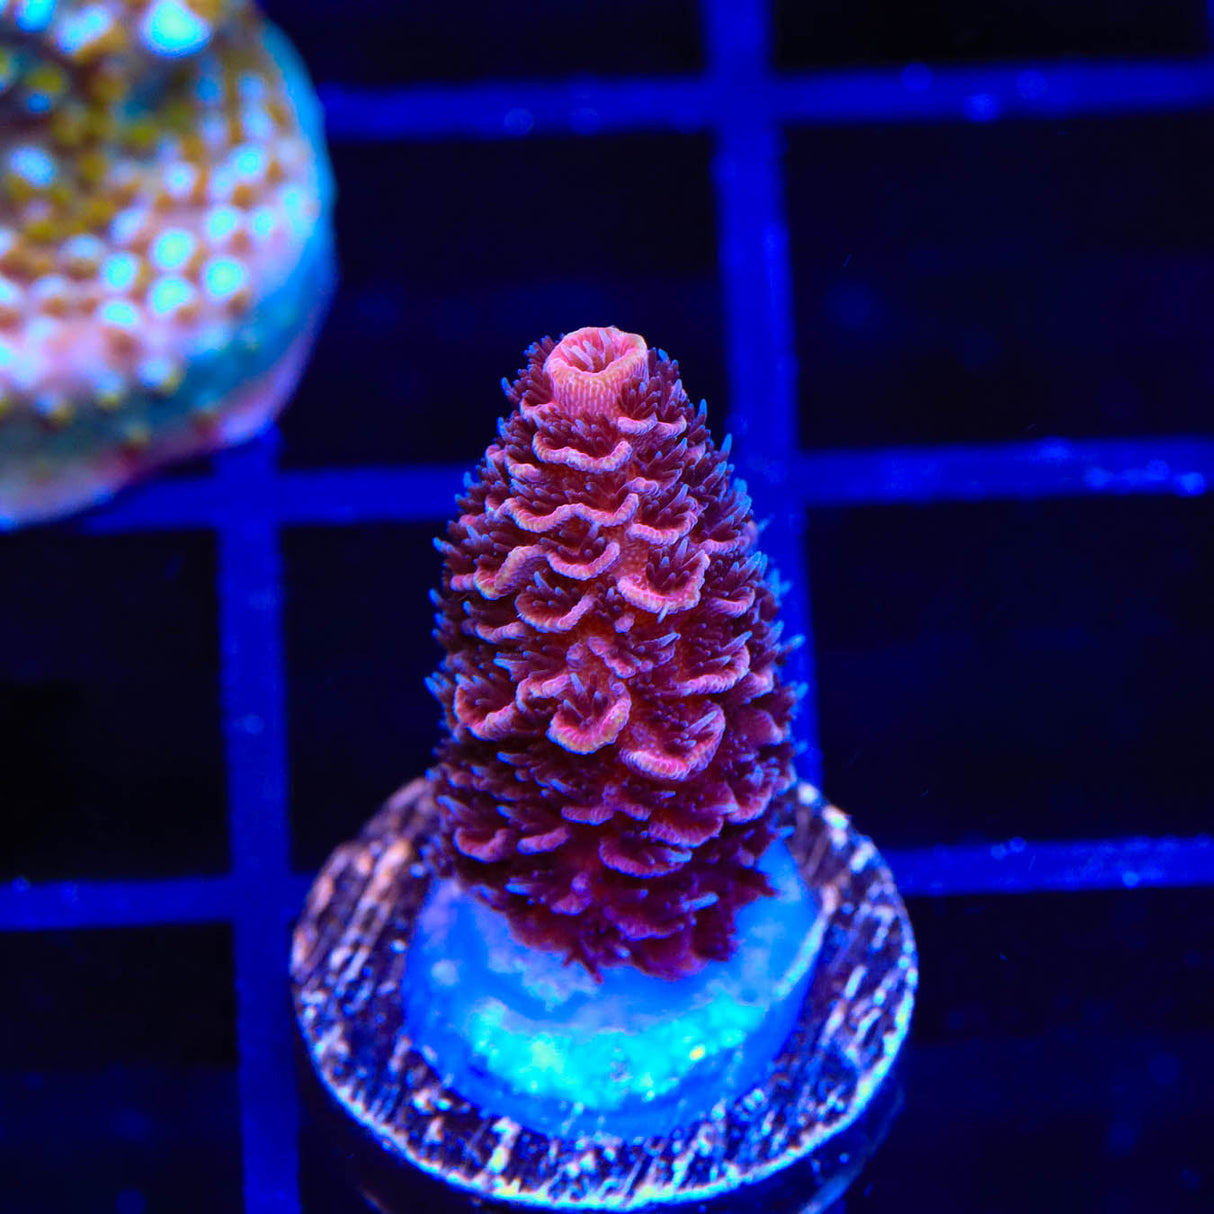 TSA Pink Panther Spathulata Acropora Coral - Top Shelf Aquatics